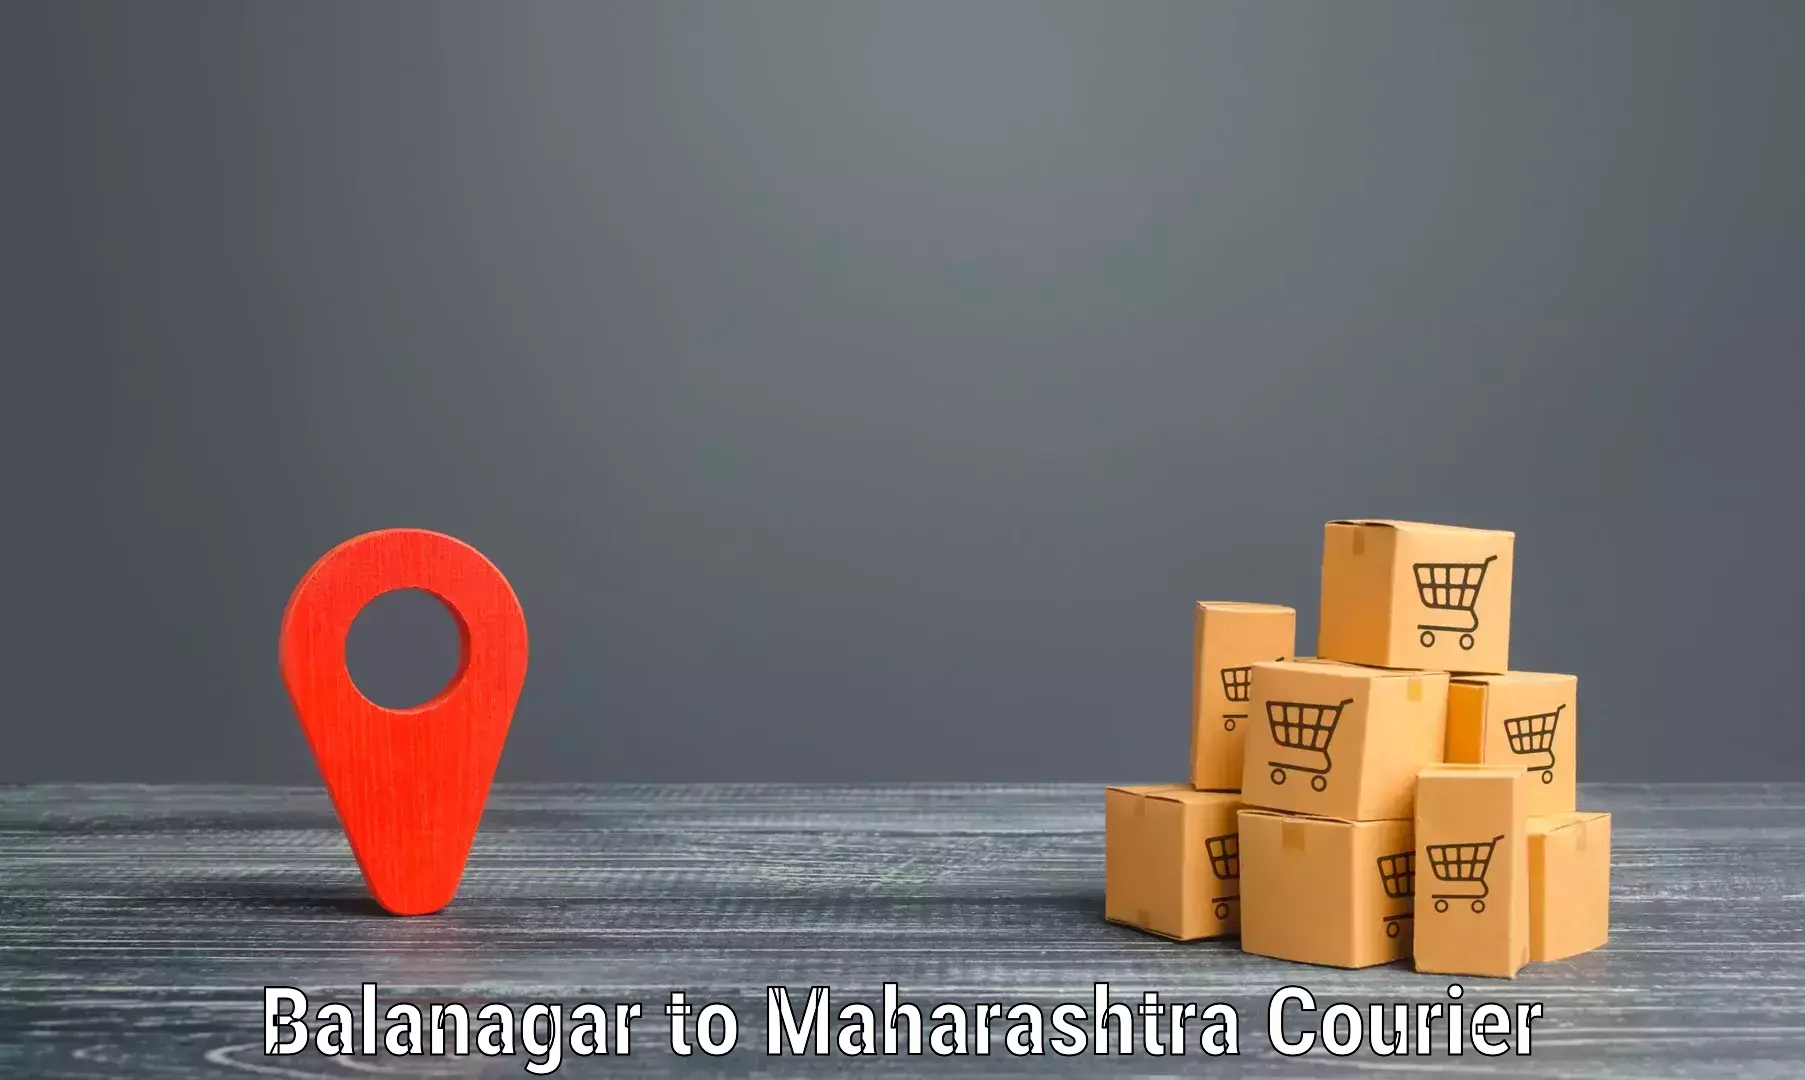 24/7 courier service in Balanagar to Phaltan